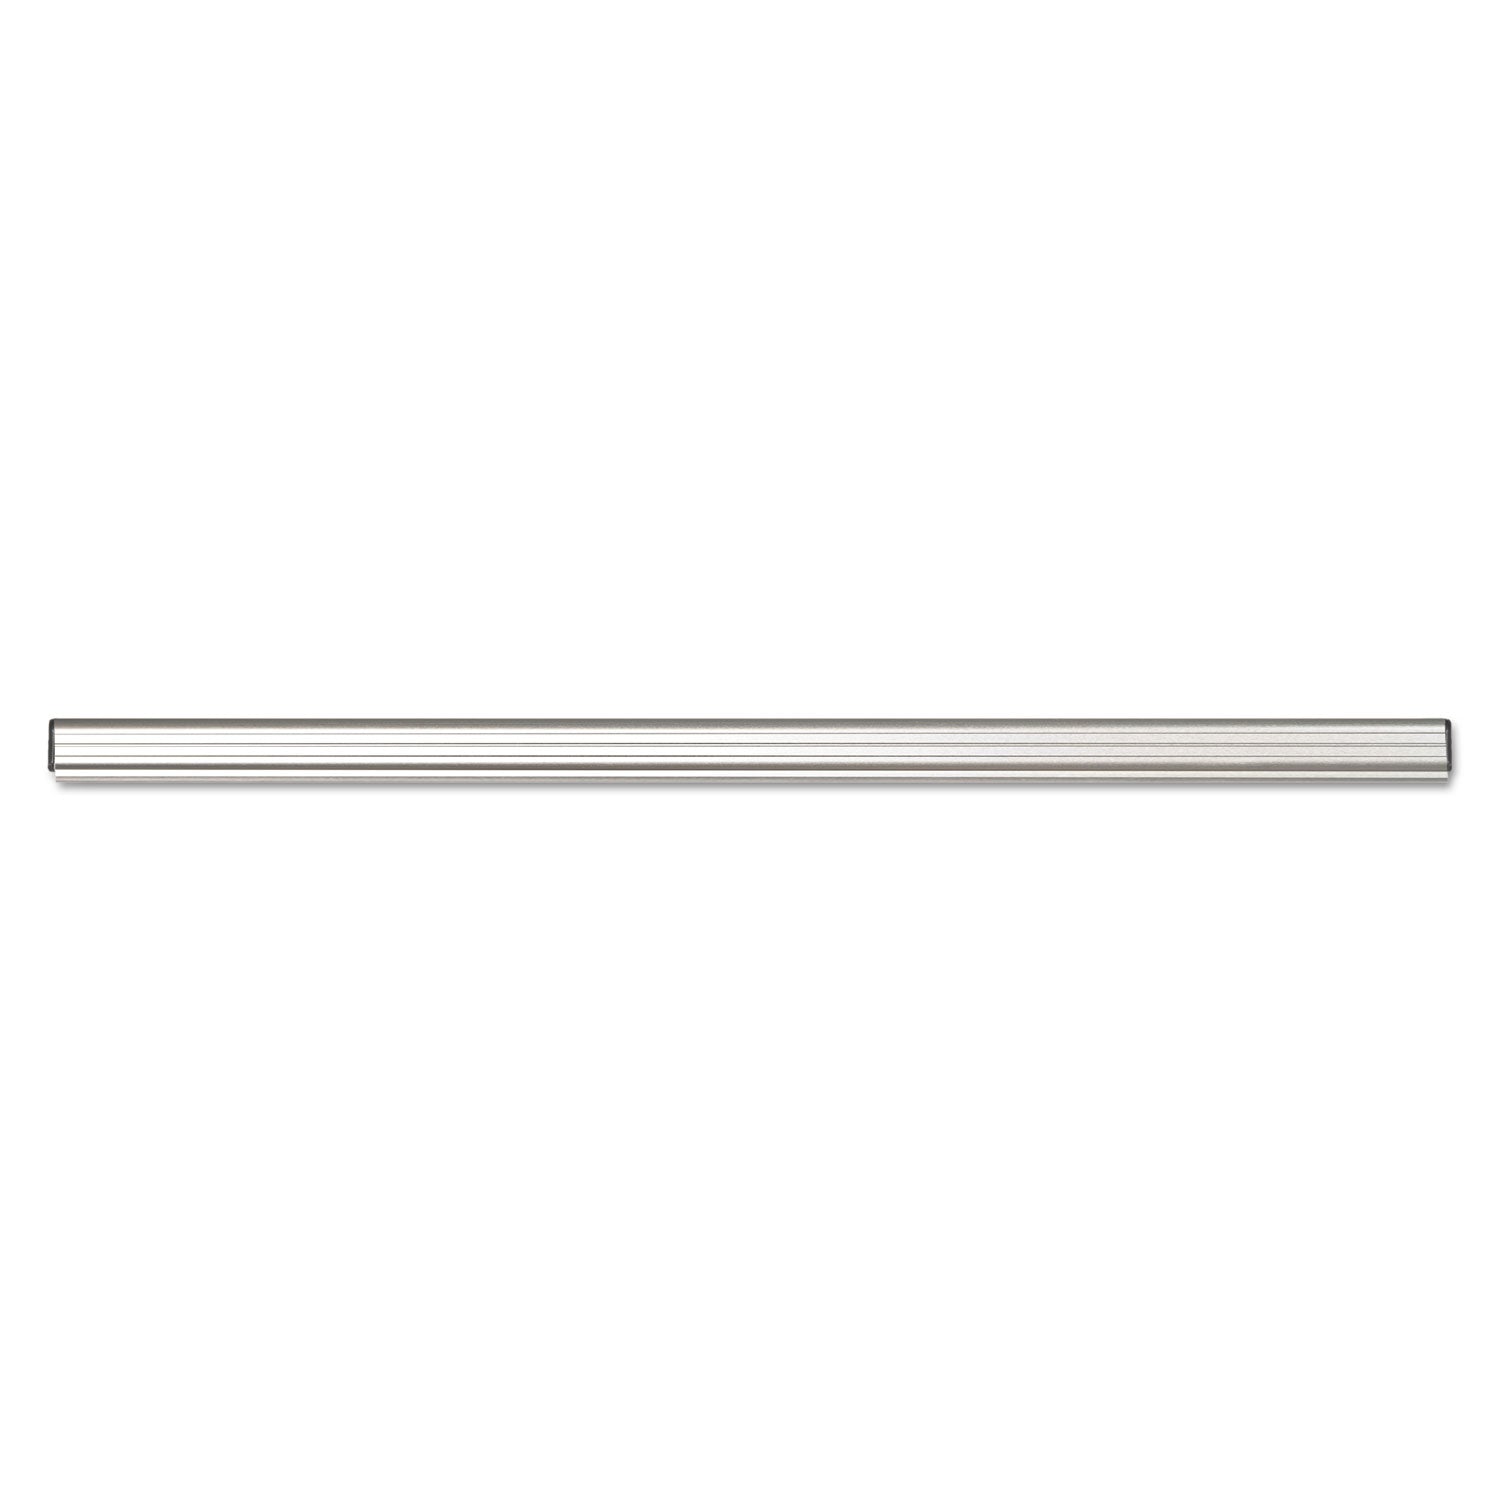 Grip-A-Strip Display Rail, 48 x 1.5, Aluminum Finish - 